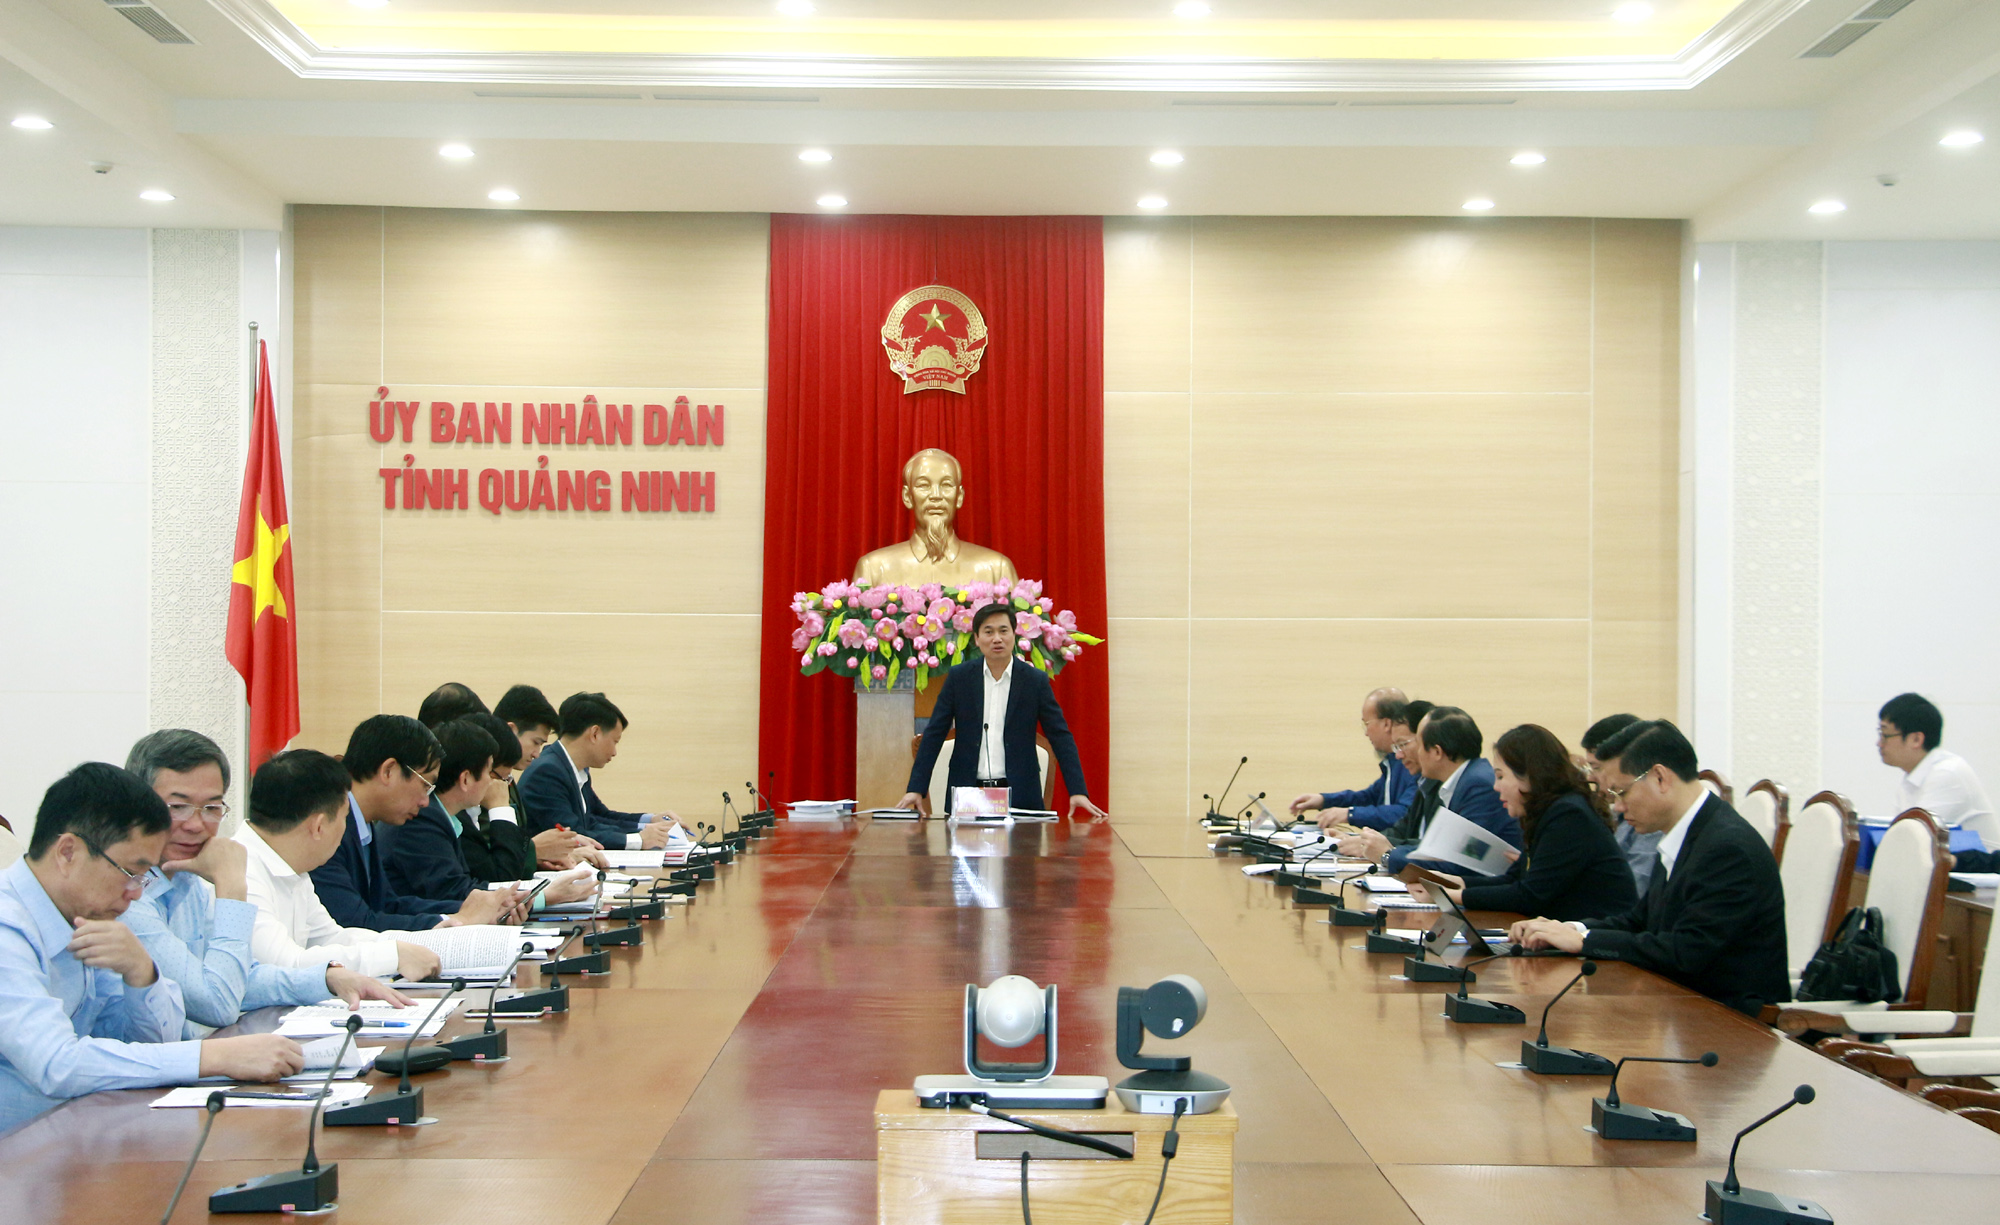 Đồng chí Nguyễn Tường Văn, Phó Bí thư Tỉnh ủy, Chủ tịch UBND tỉnh, phát biểu kết luận.